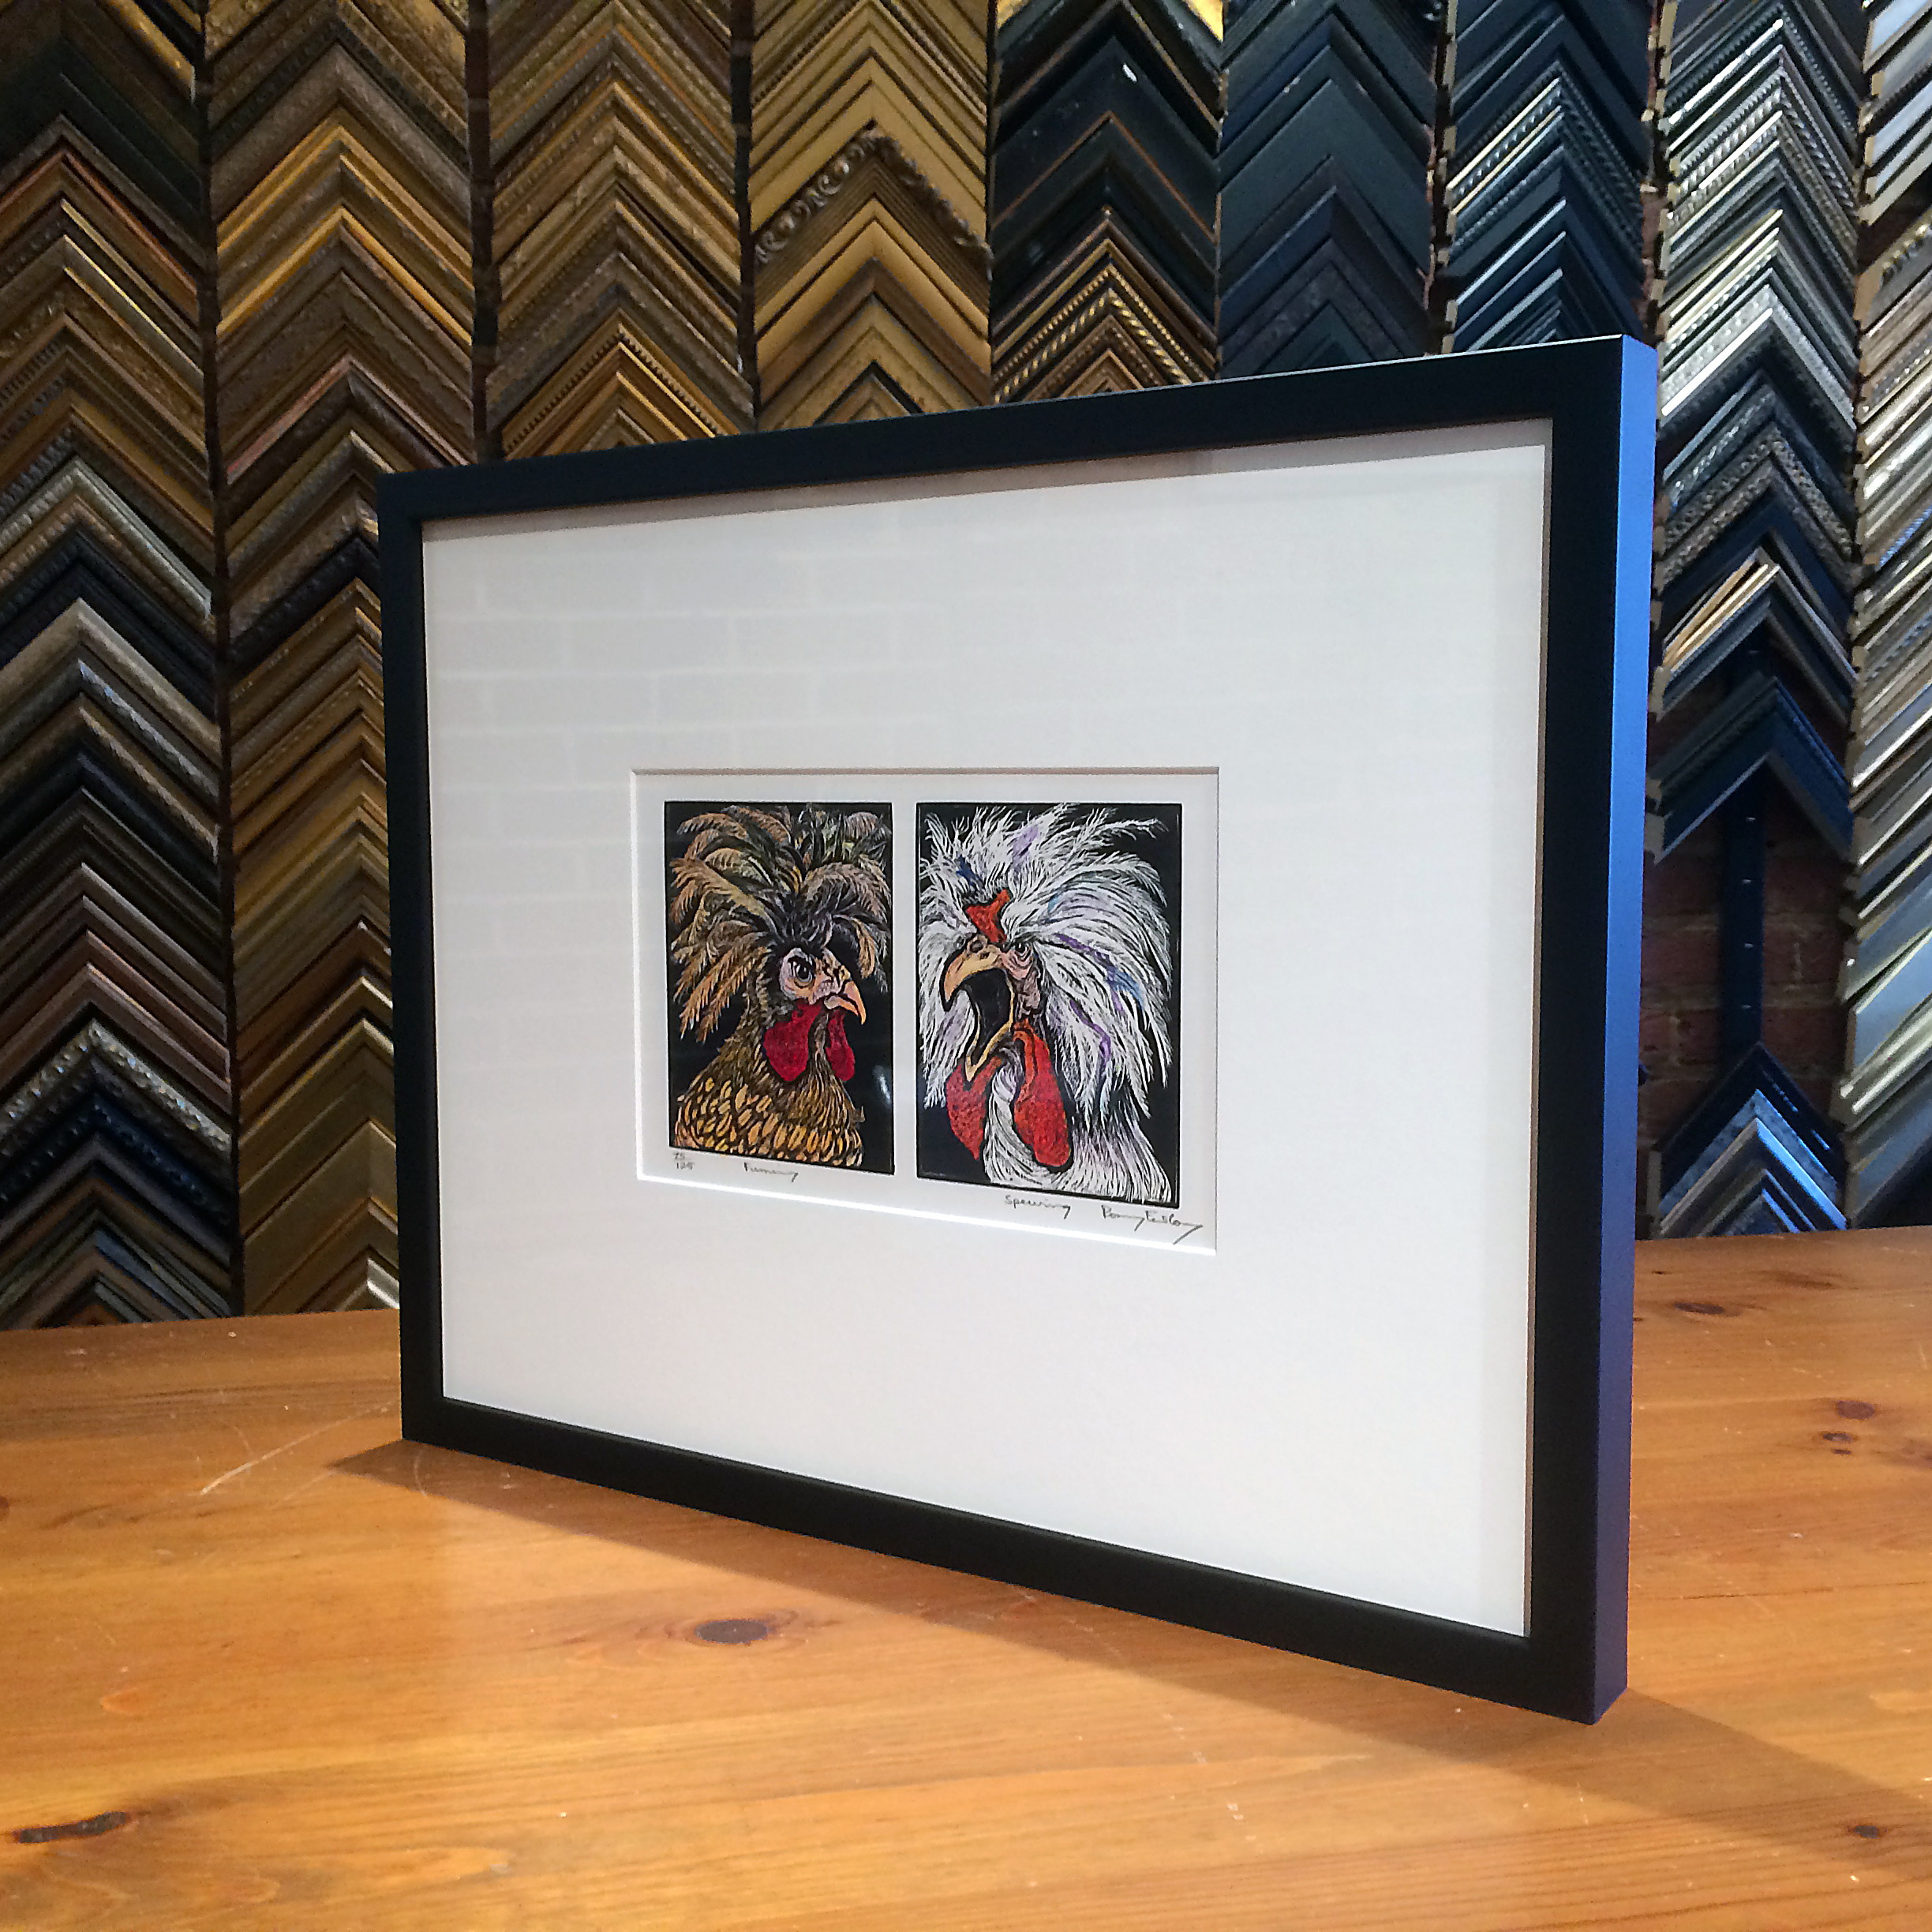 Standard print sizes make framing easier - Rosemary Covey's art in basic black frame in Virginia Frame Shop.